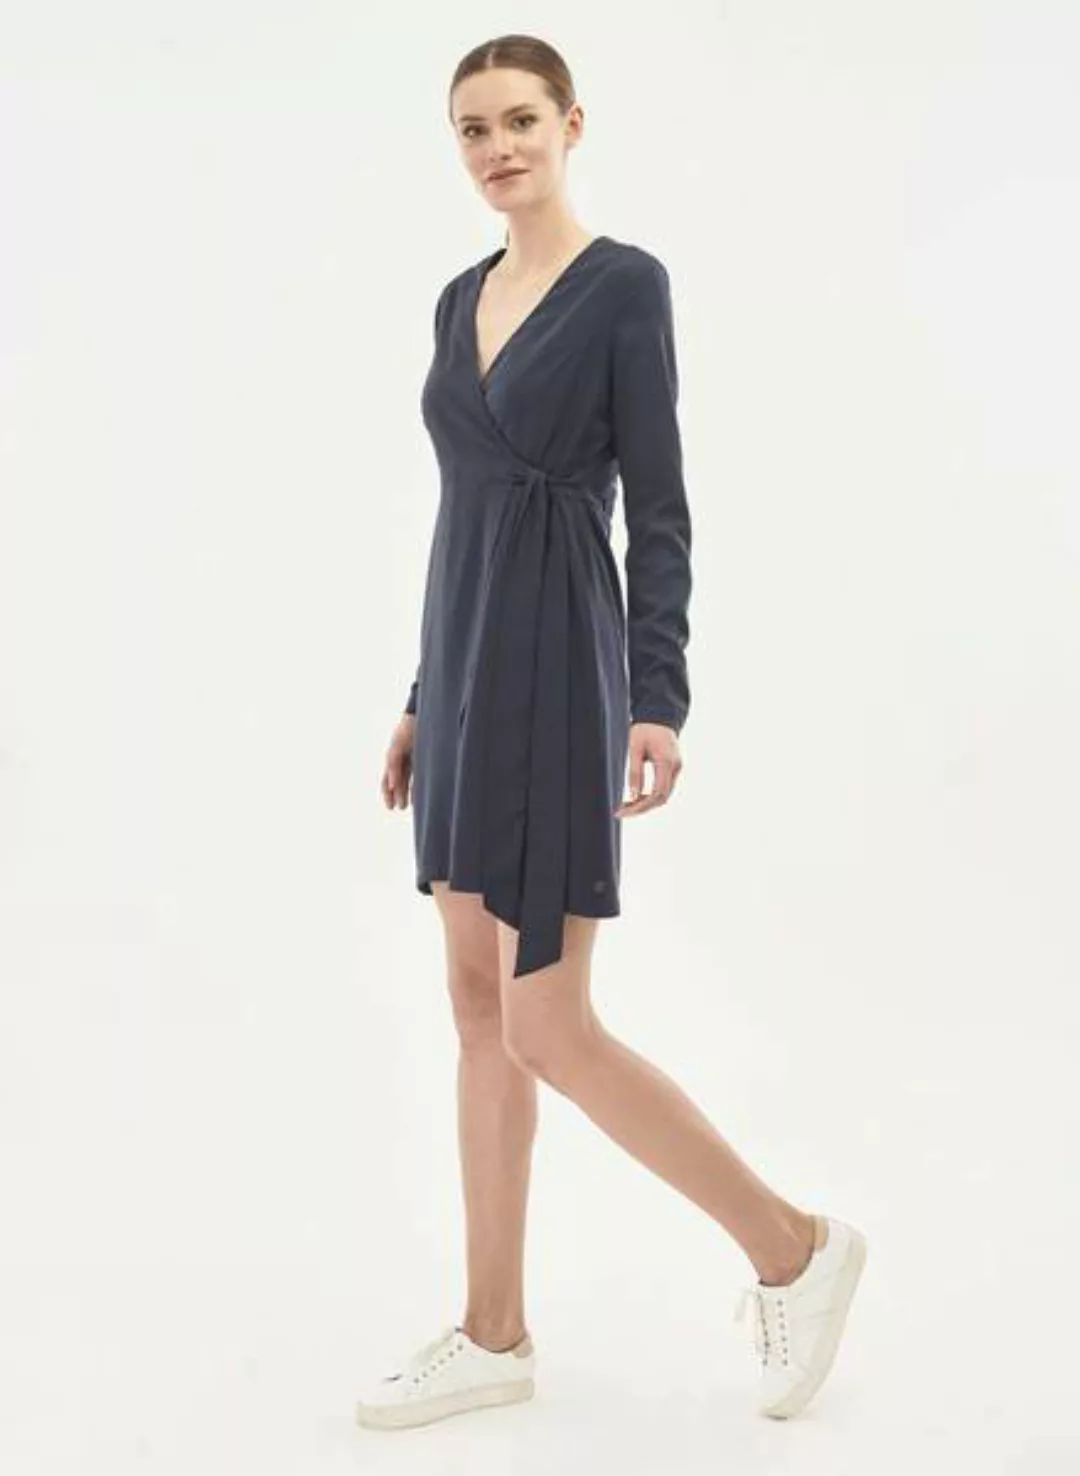 Kleid Aus Tencel Mit Taillengürtel günstig online kaufen